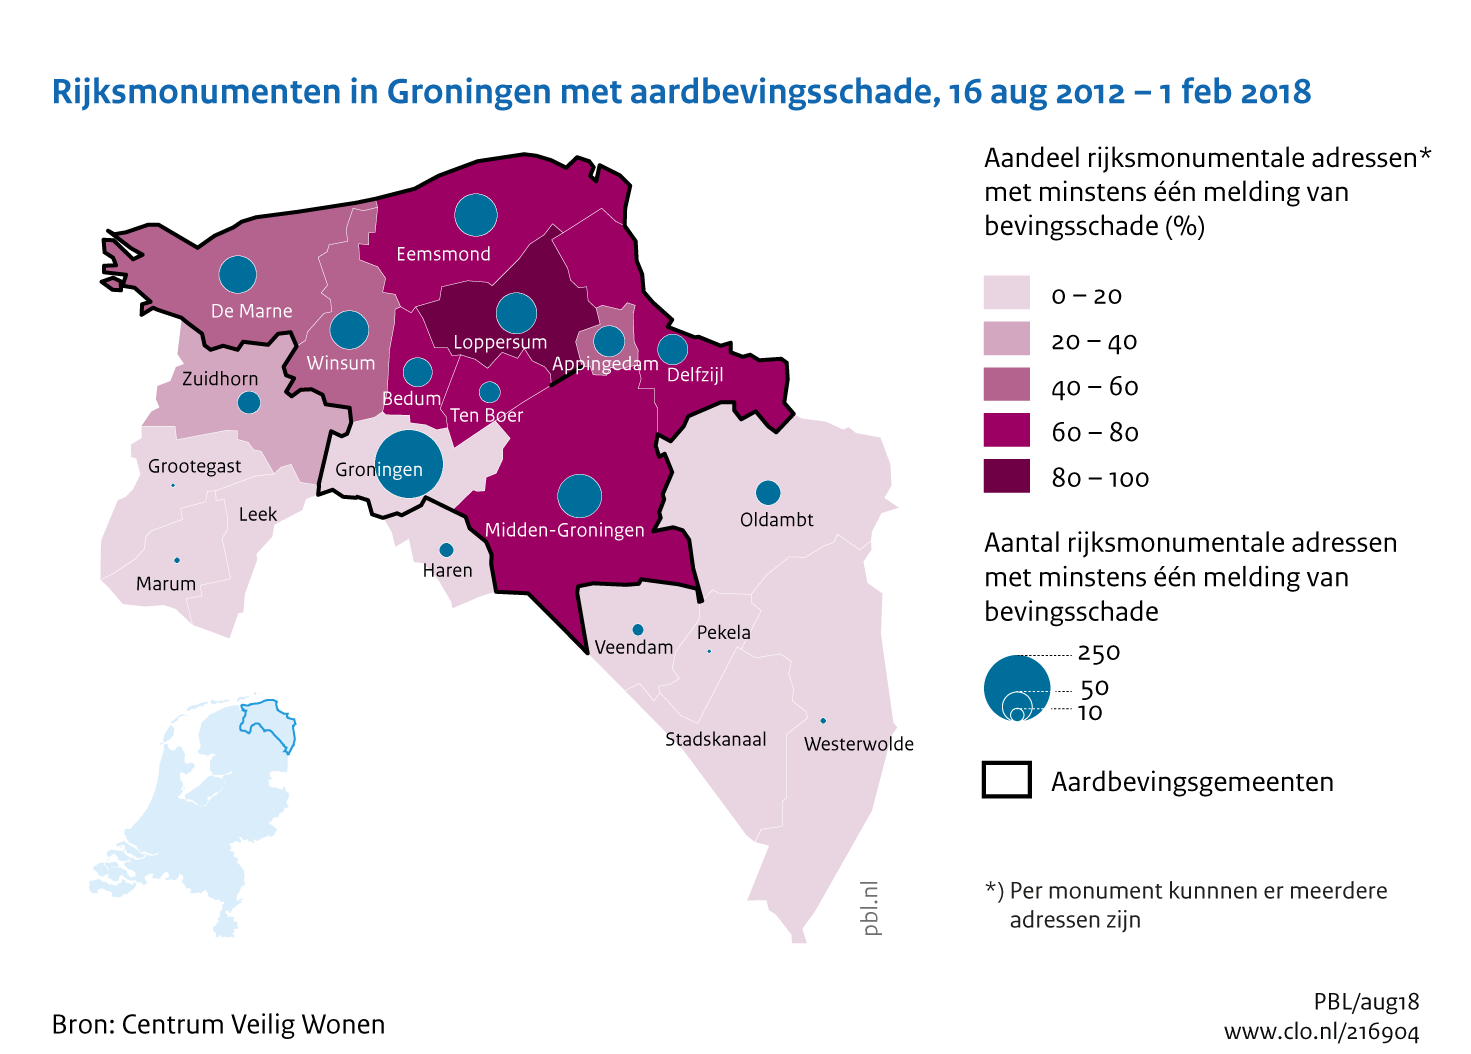 Figuur Rijksmonumenten in Groningen met aardbevingsschade, 2012-2018.. In de rest van de tekst wordt deze figuur uitgebreider uitgelegd.